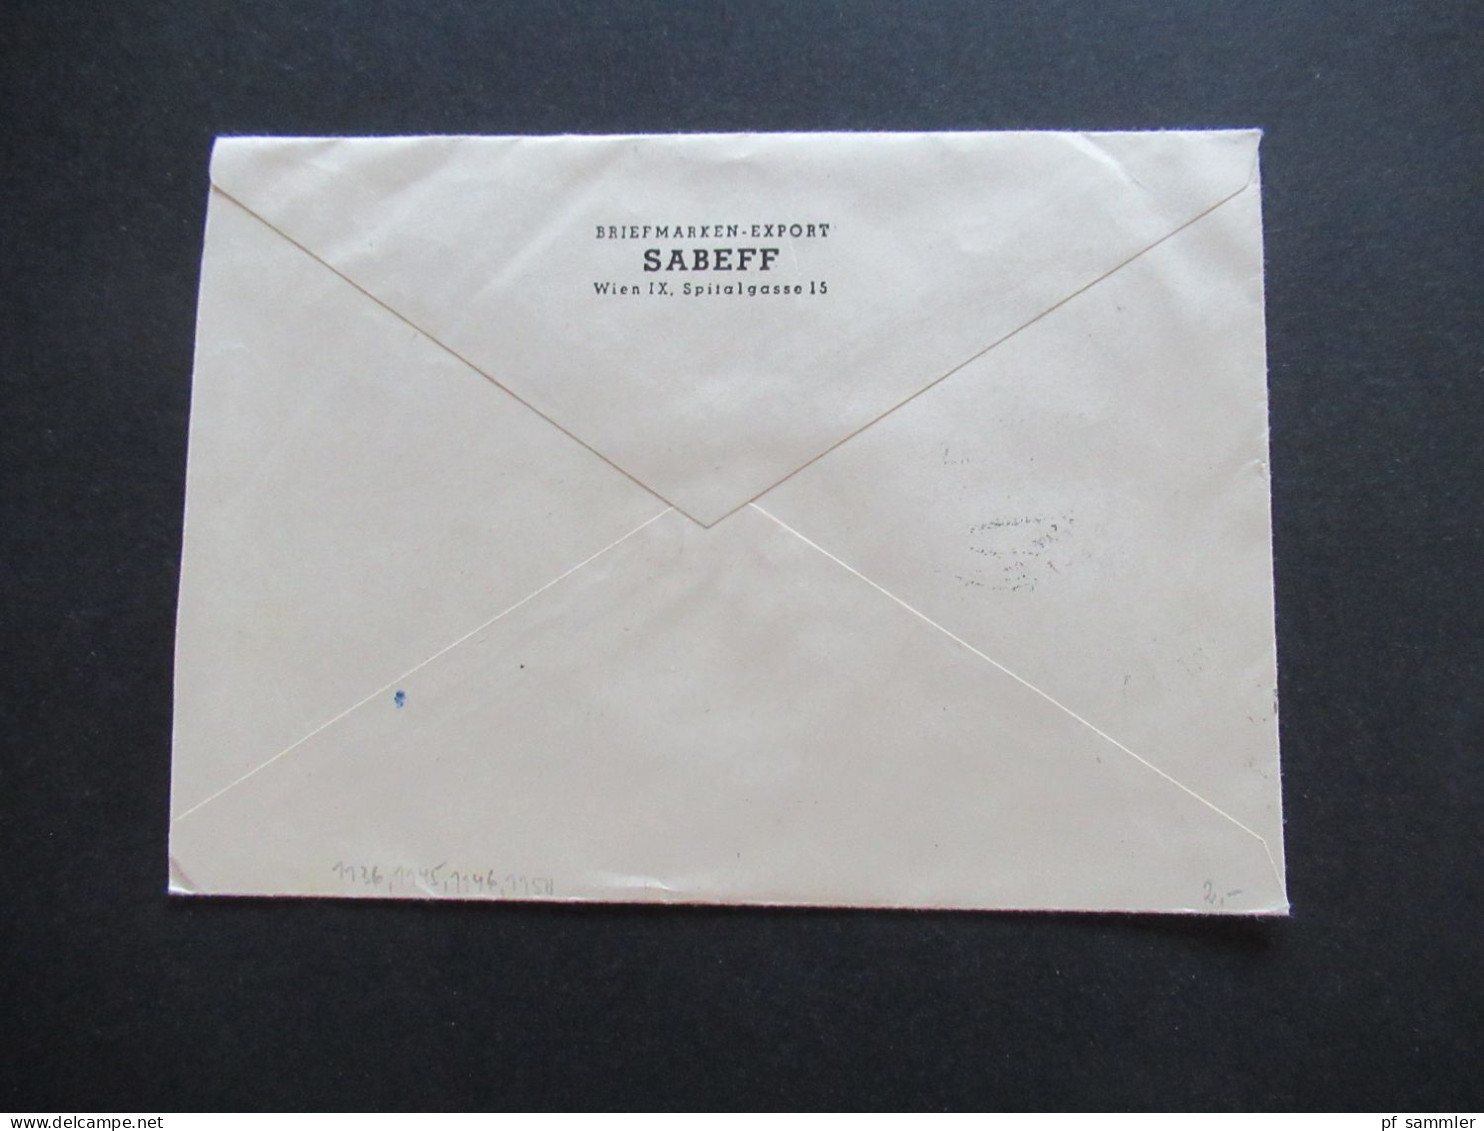 Österreich 1964 MiF Mit 4 Marken Einschreiben Wien 101 Auslandsbrief Nach Menden Sauerland / Inhalt Zollfrei Sabeff - Covers & Documents